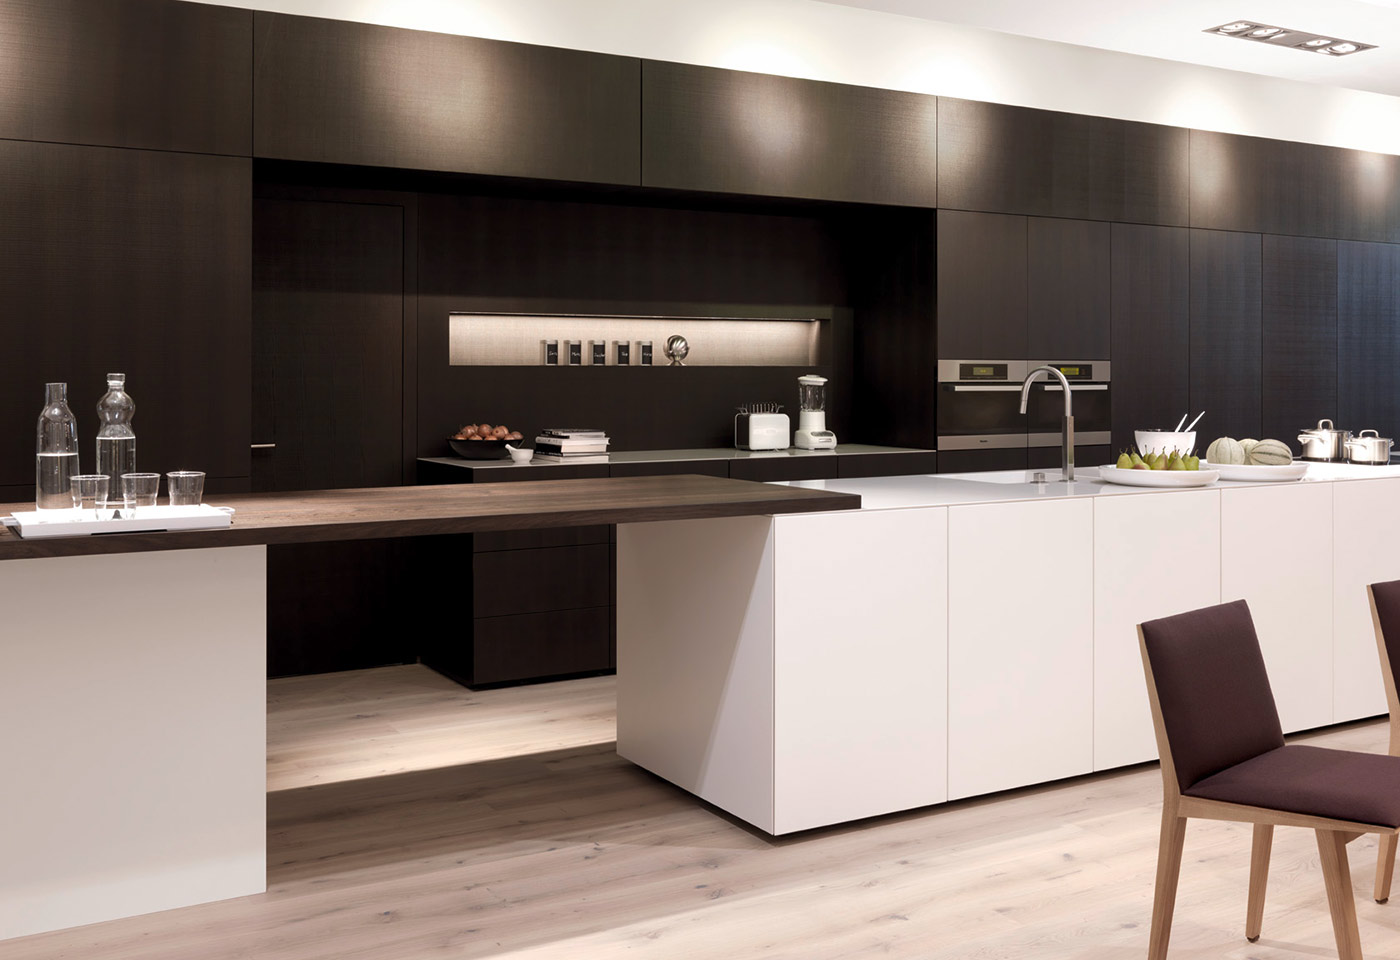 Die ergänzenden Holzelemente in der Küche runden die Raumgestaltung ab.